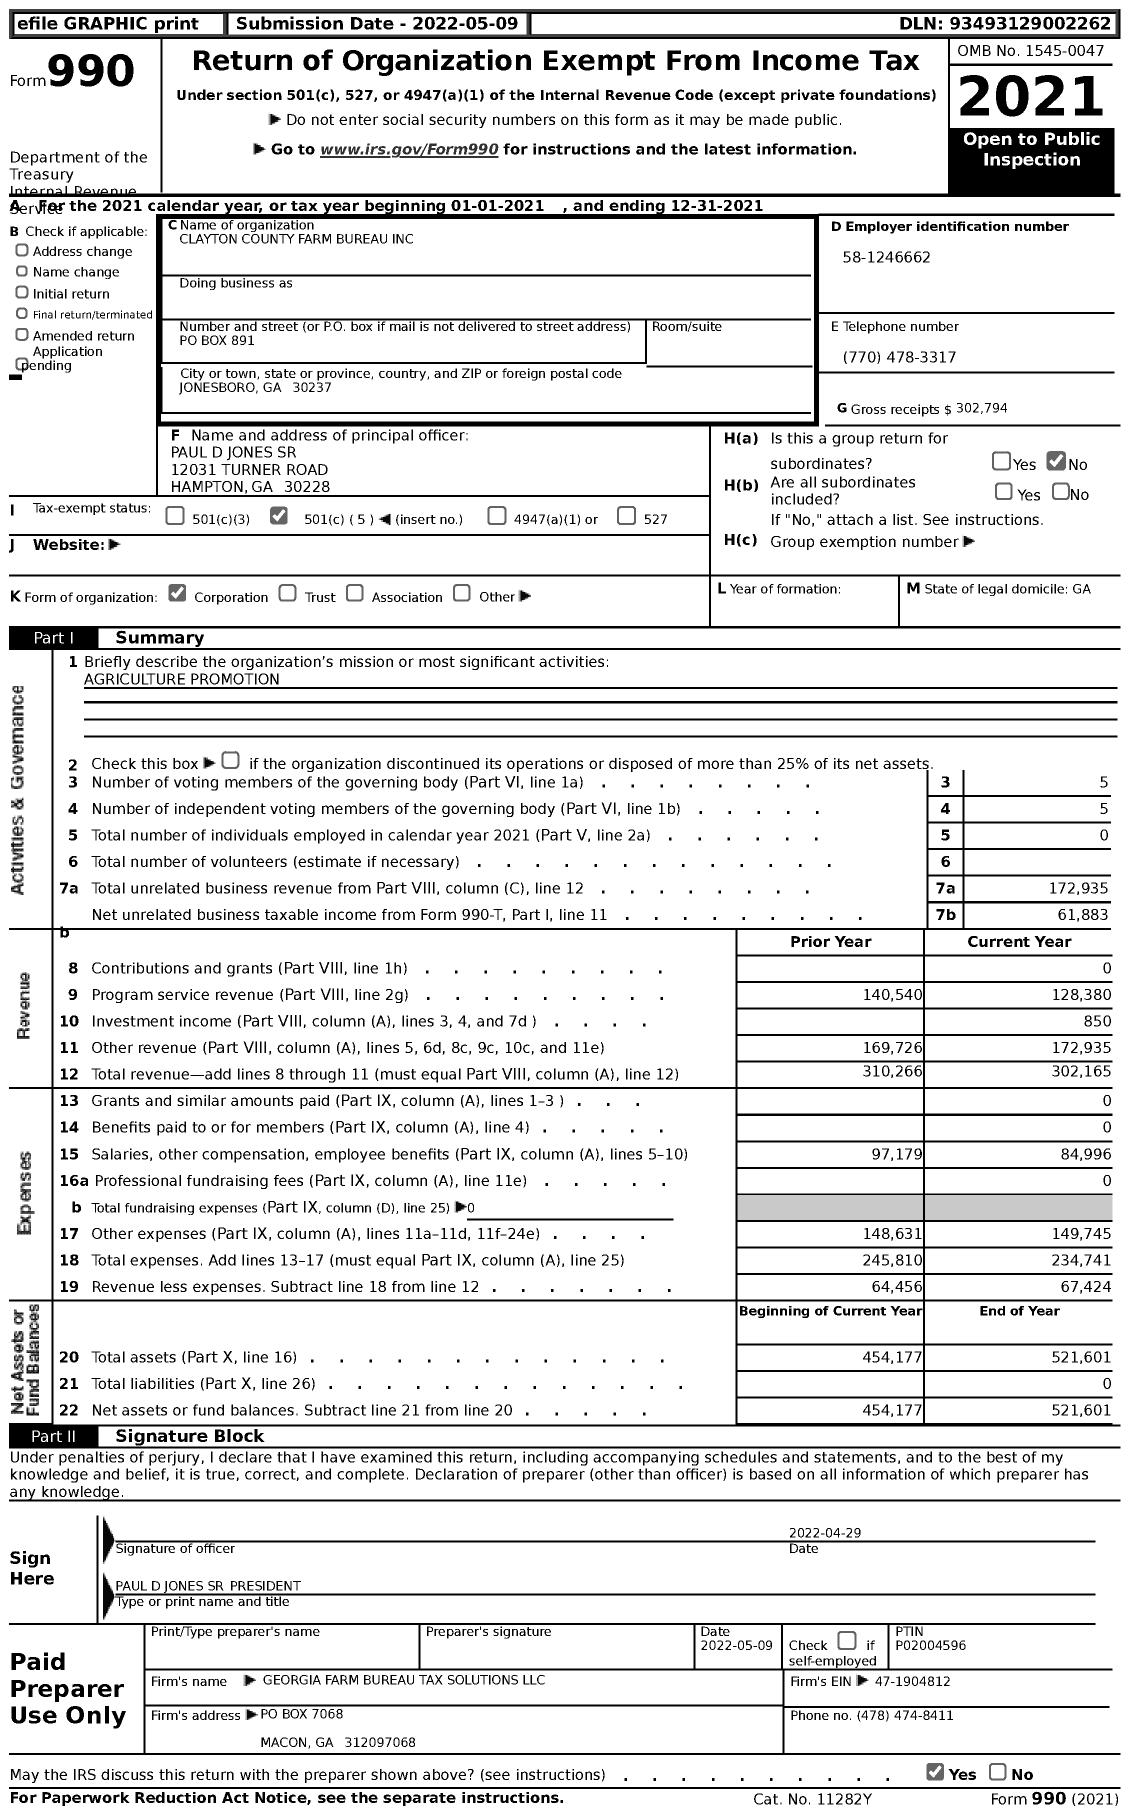 Image of first page of 2021 Form 990 for Georgia Farm Bureau Federation - Clayton County Farm Bureau